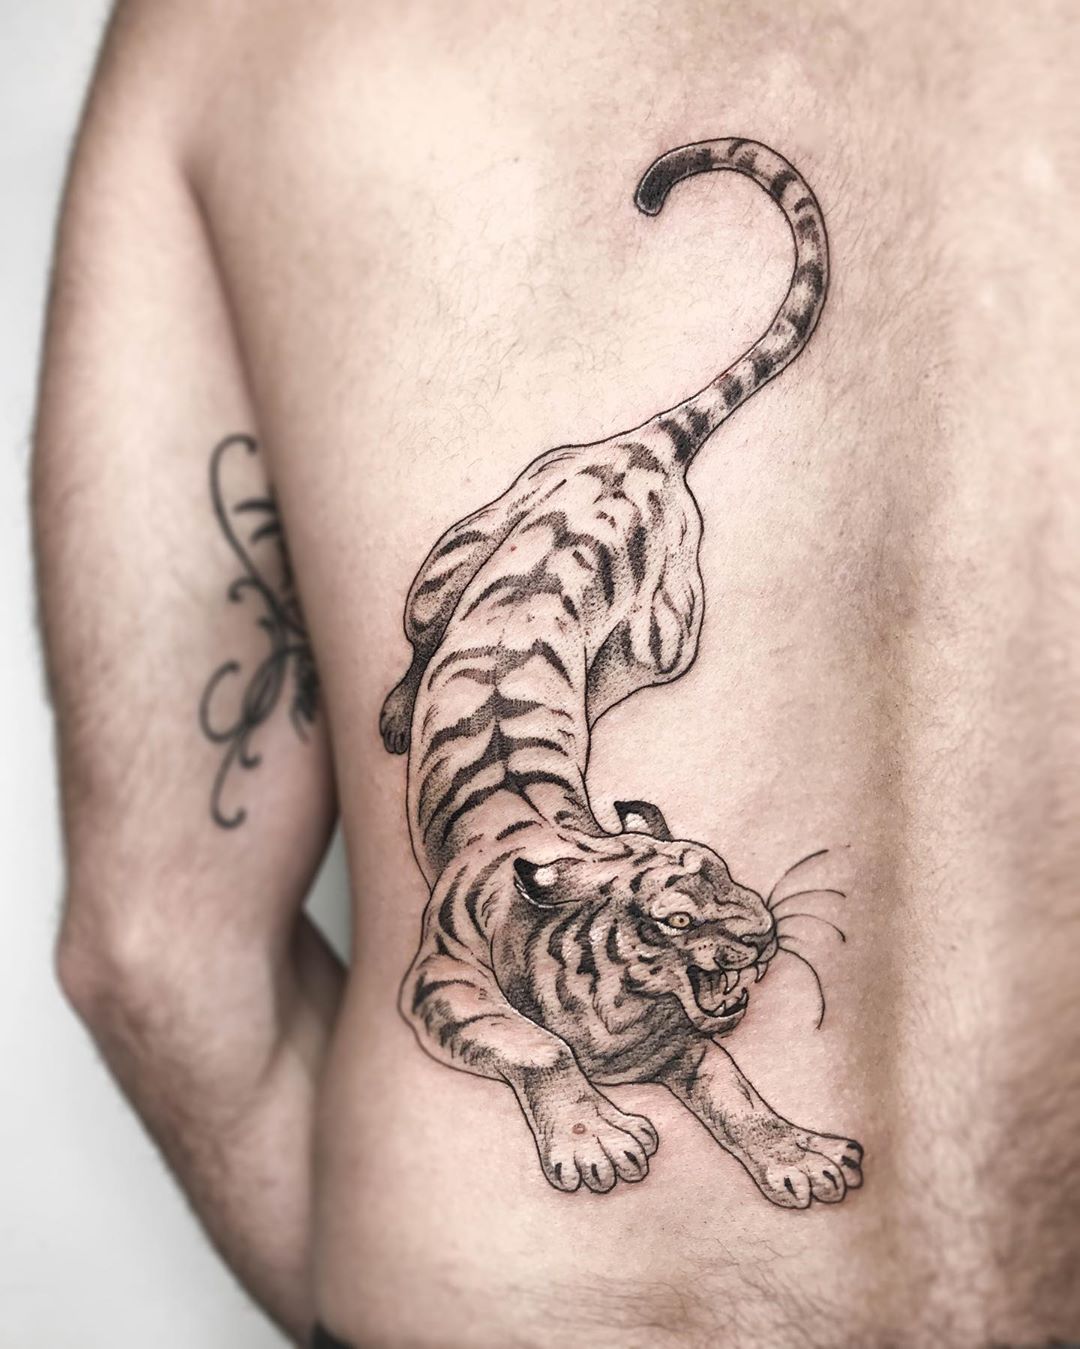 Tiger tattoo by Jana